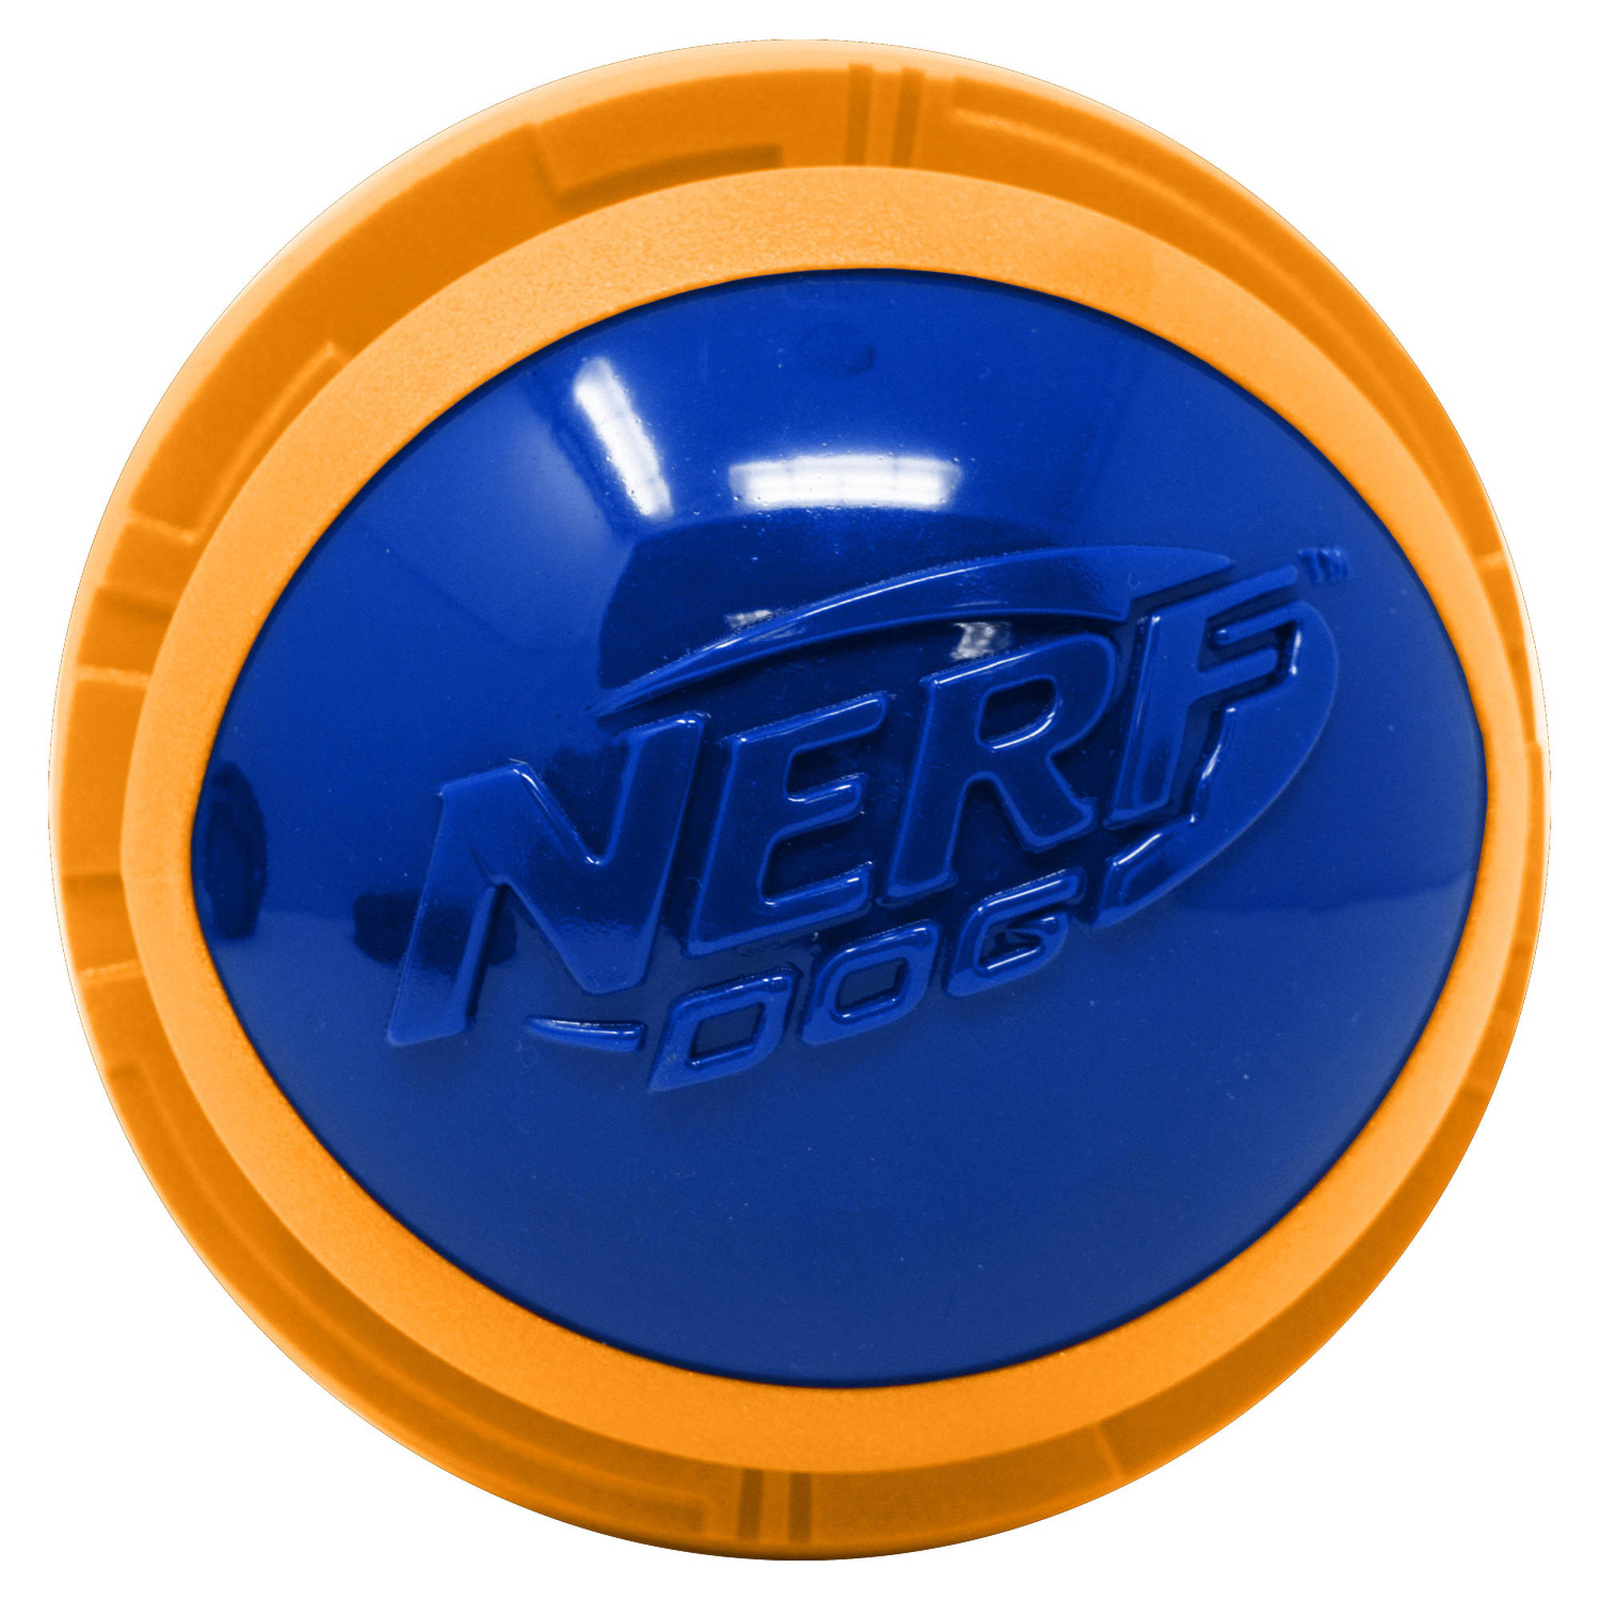 Nerf Nerf мяч из вспененной резины и термопластичной резины, 10 см (серия Мегатон), (синий/оранжевый) (380 г) nerf nerf мяч для регби из термопластичной резины 18 см серия мегатон синий оранжевый 254 г